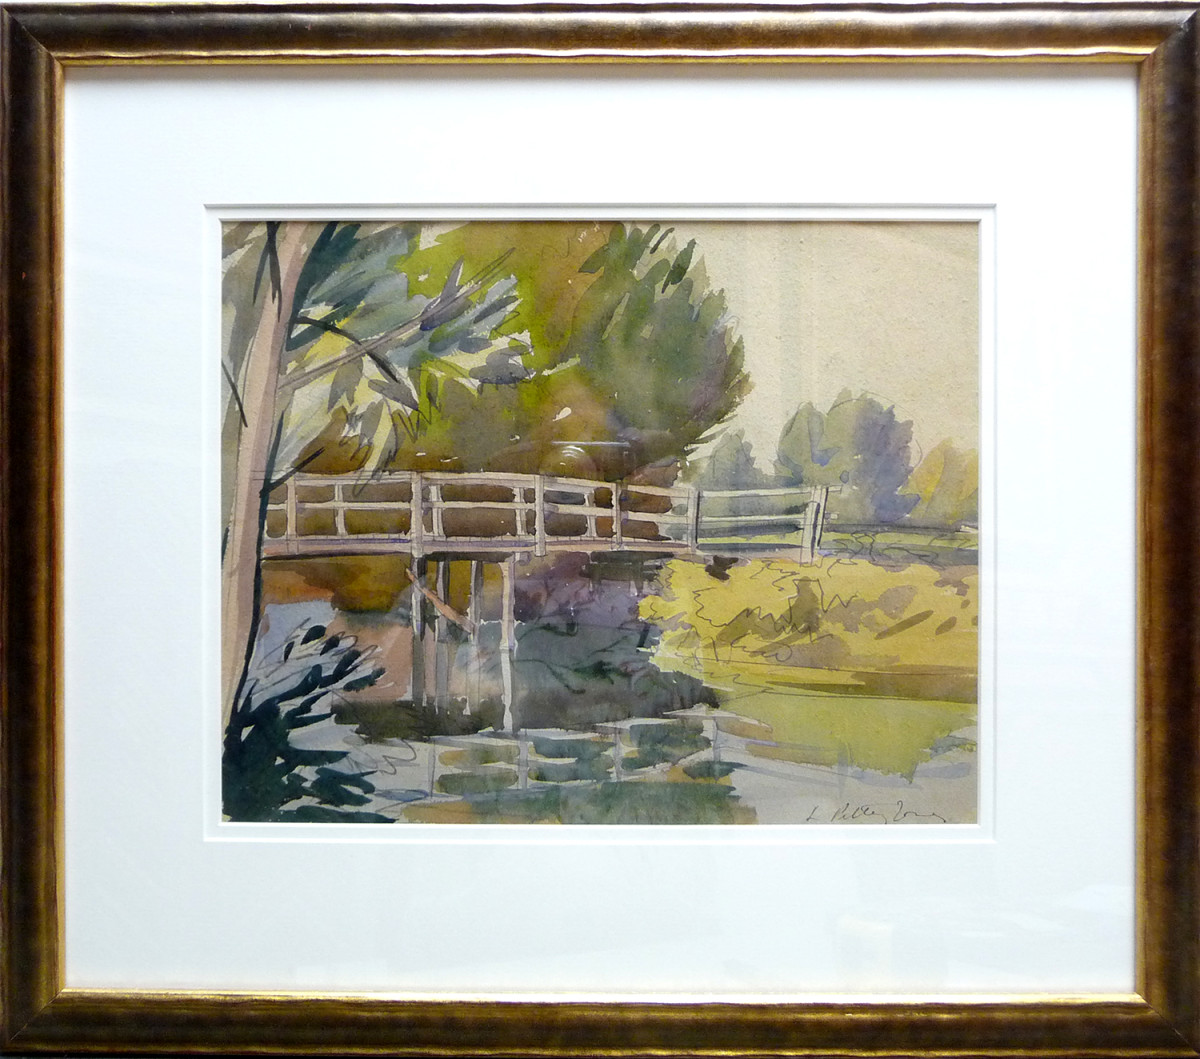 2382 - Whitemud Bridge #1, Edmonton by Llewellyn Petley-Jones (1908-1986) 